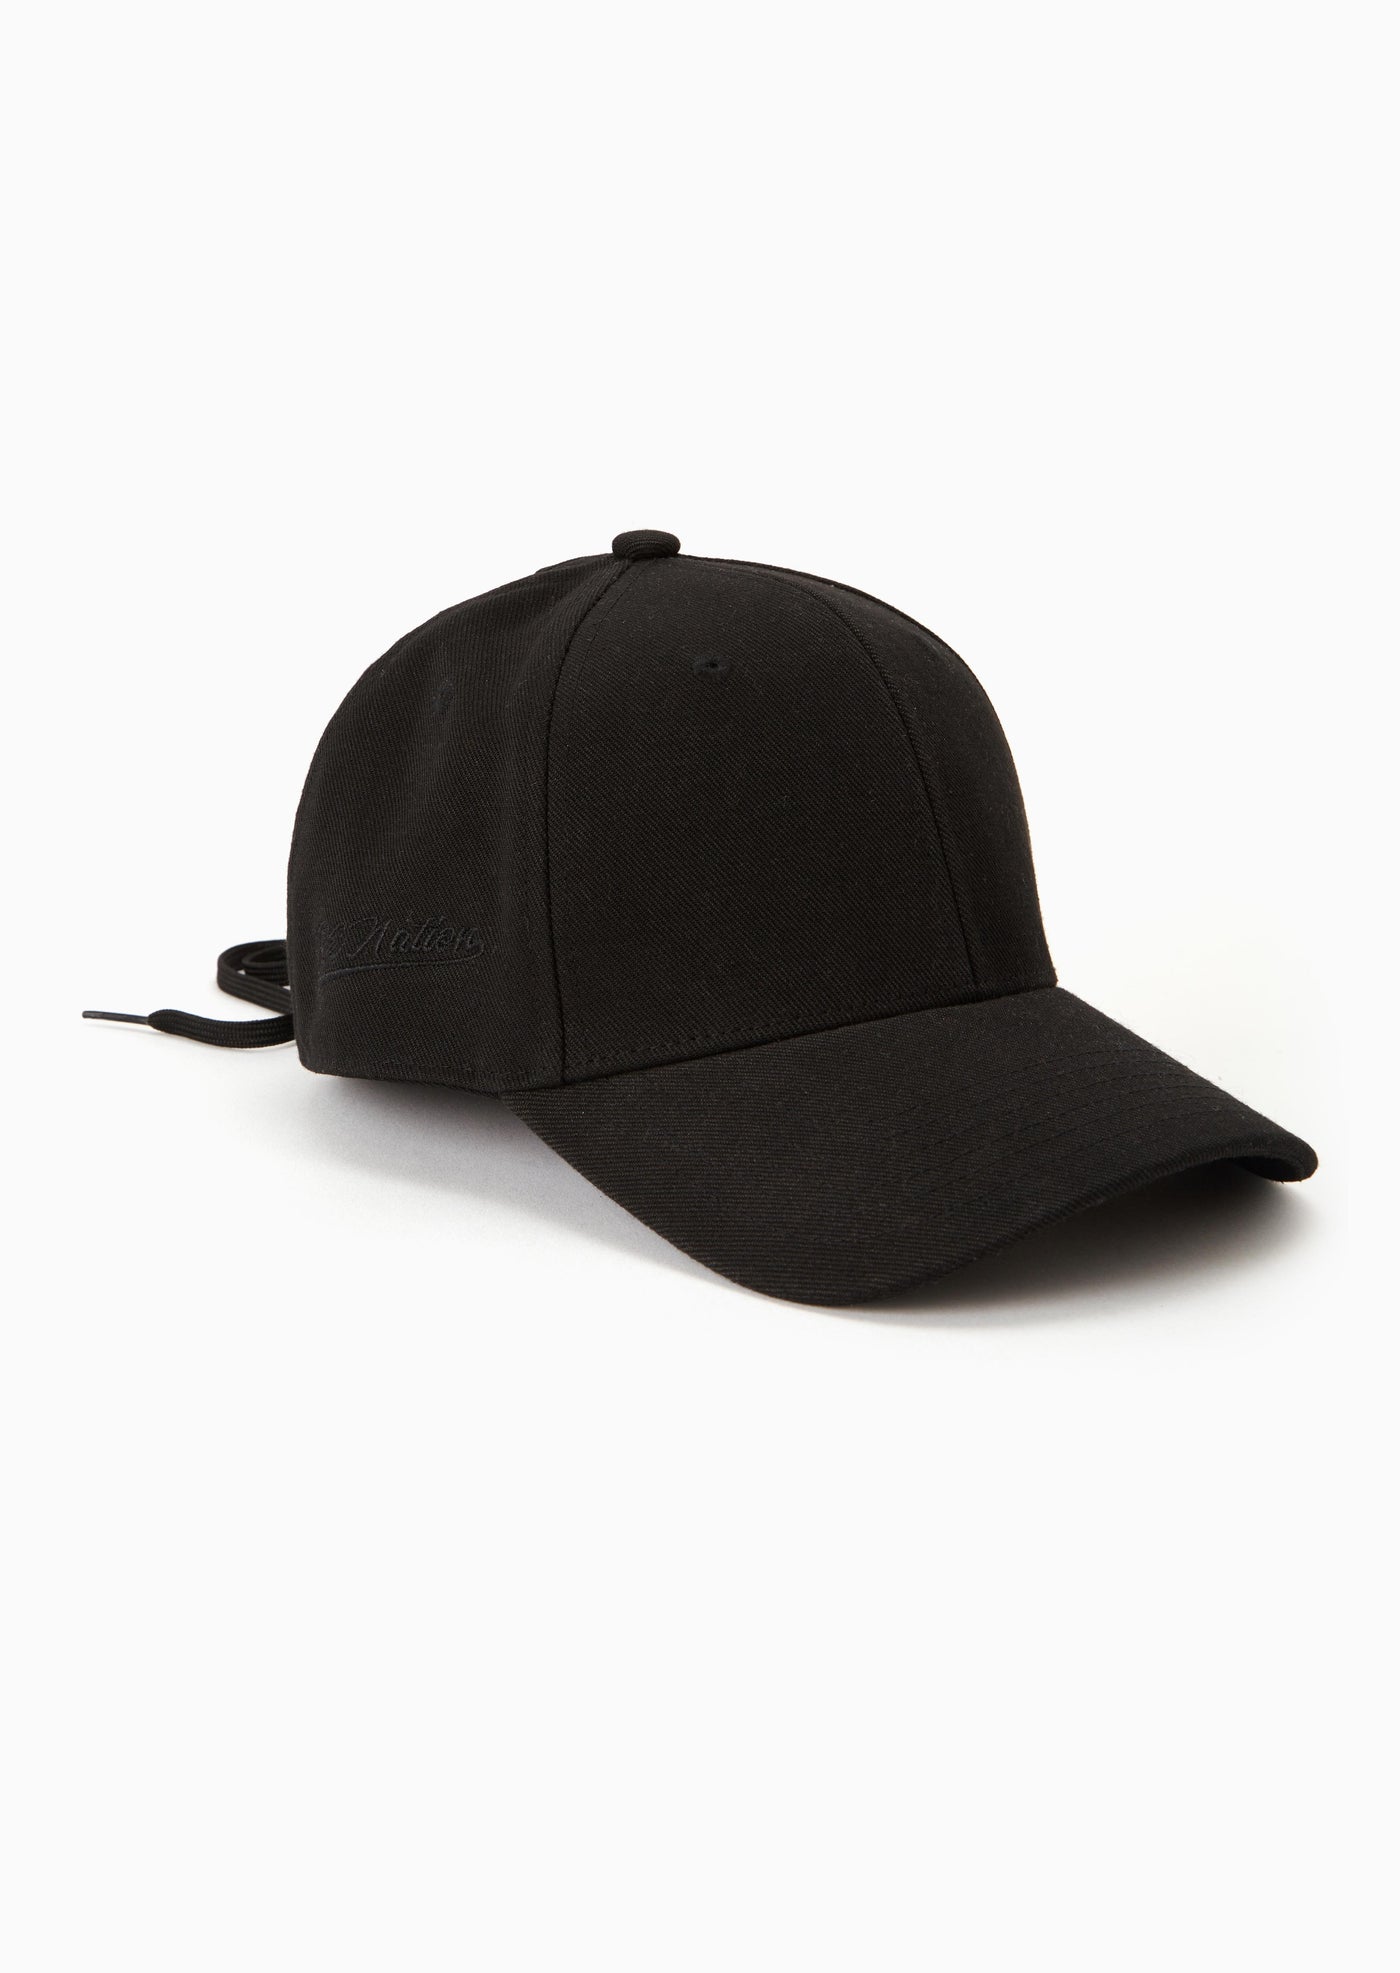 VENTURA CAP IN BLACK